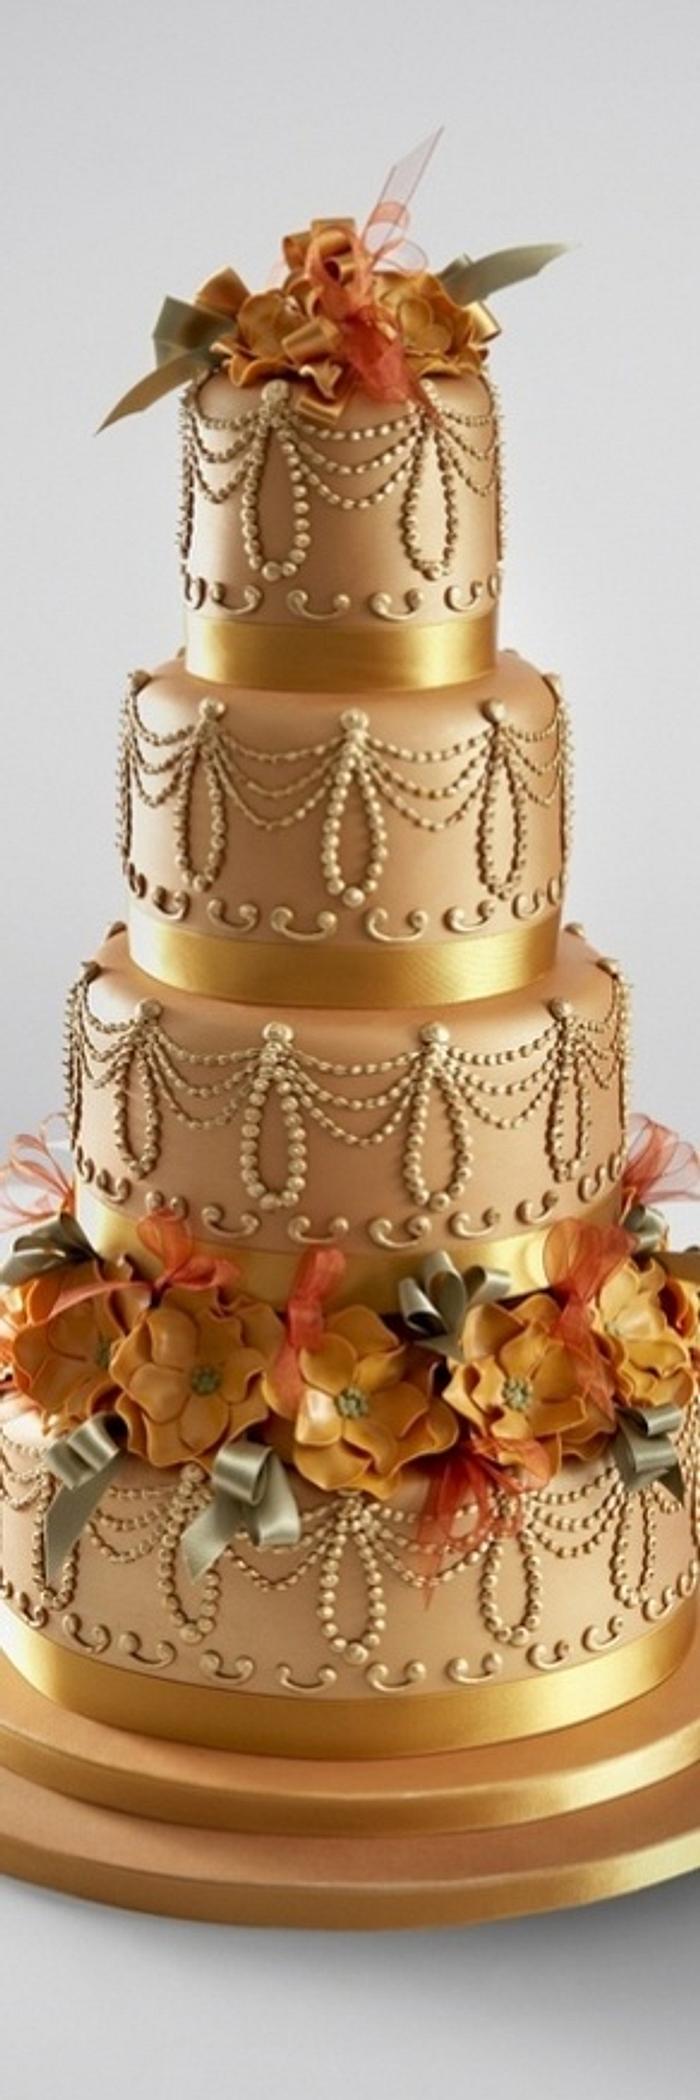 Stunning Gold Wedding Cake